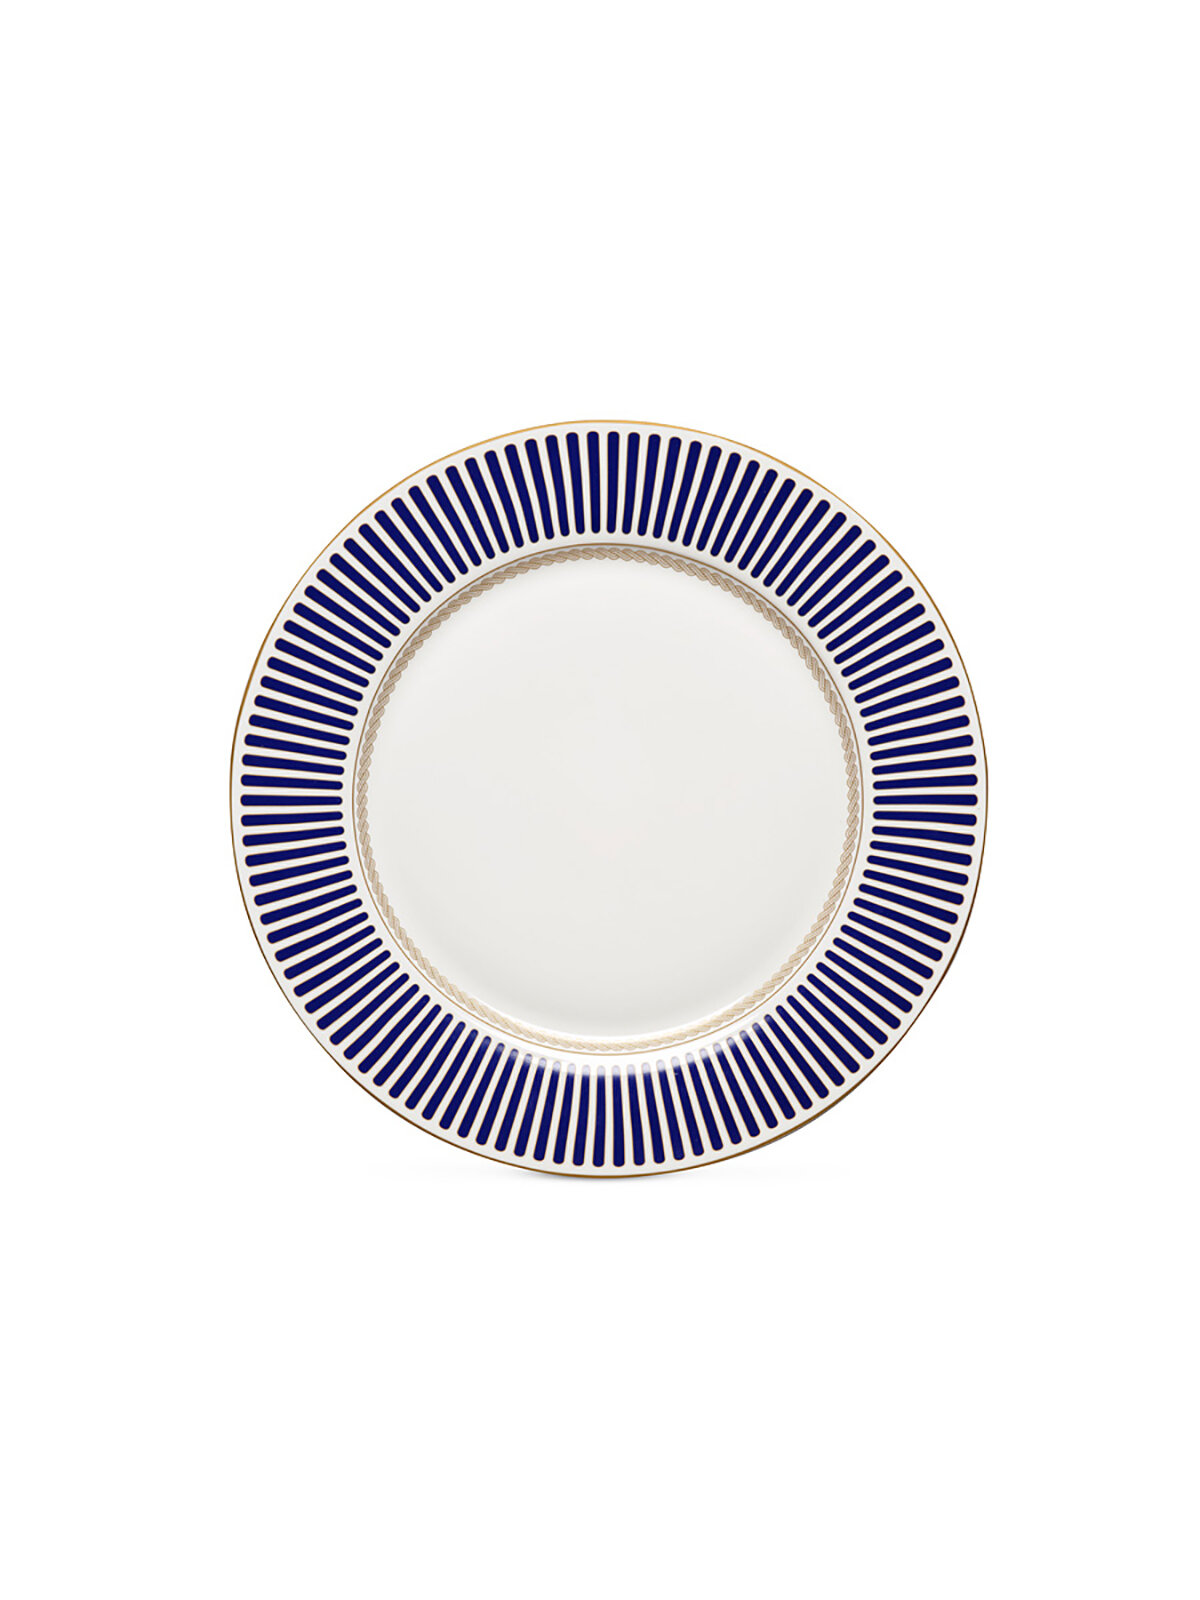 Тарелка обеденная Pozzi Milano 1876 Corallo, фарфоровая, 27 см